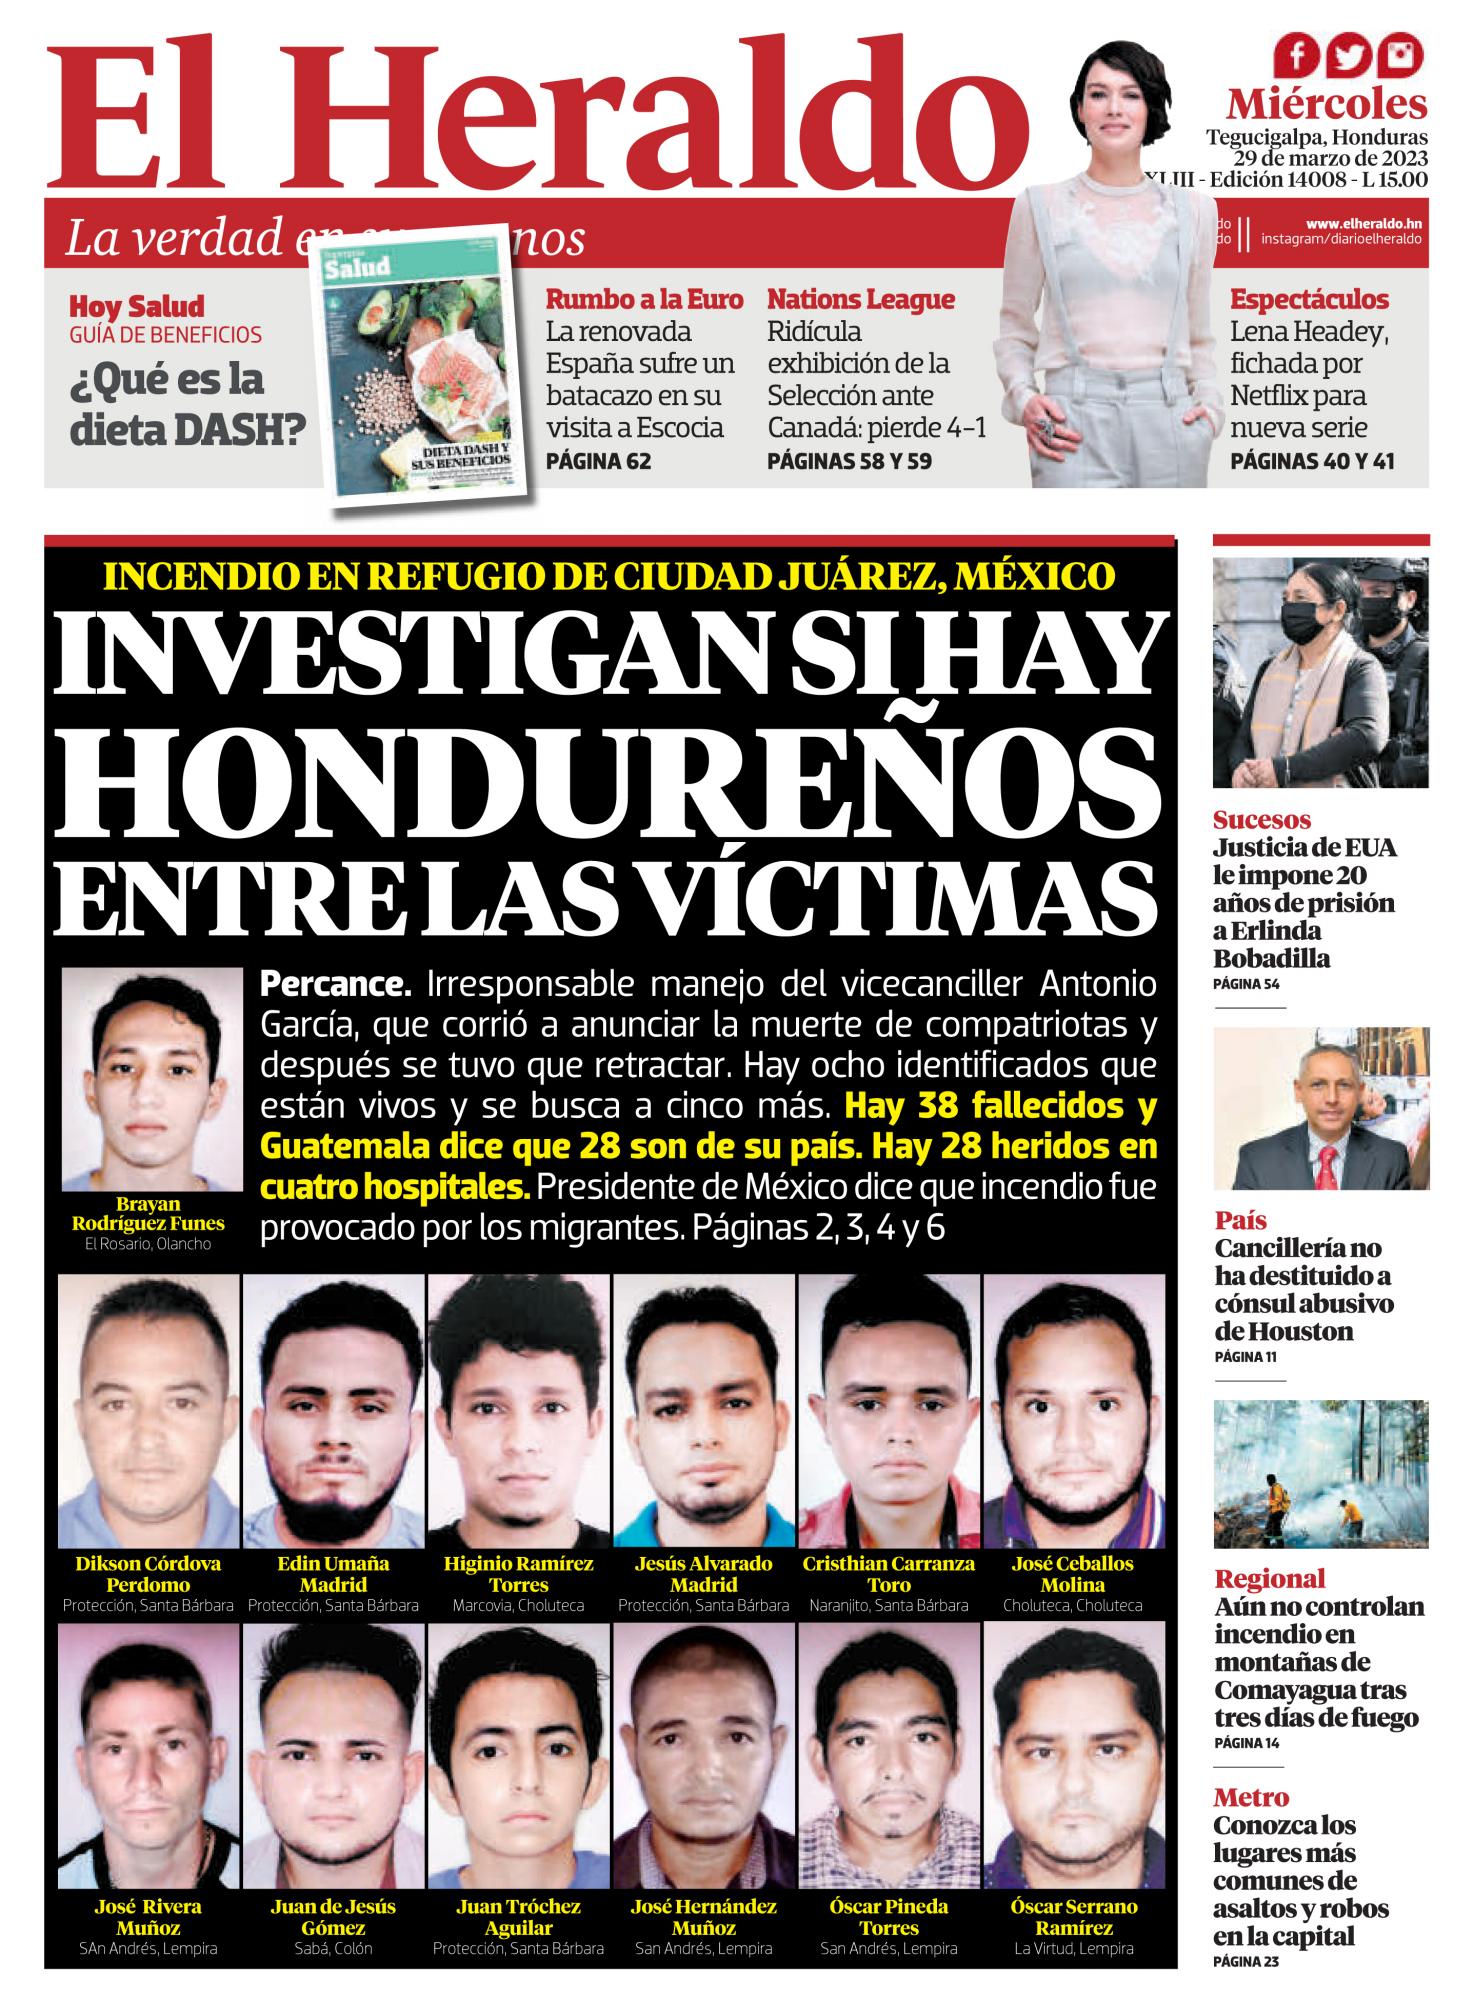 Investigan si hay hondureños entre las víctimas